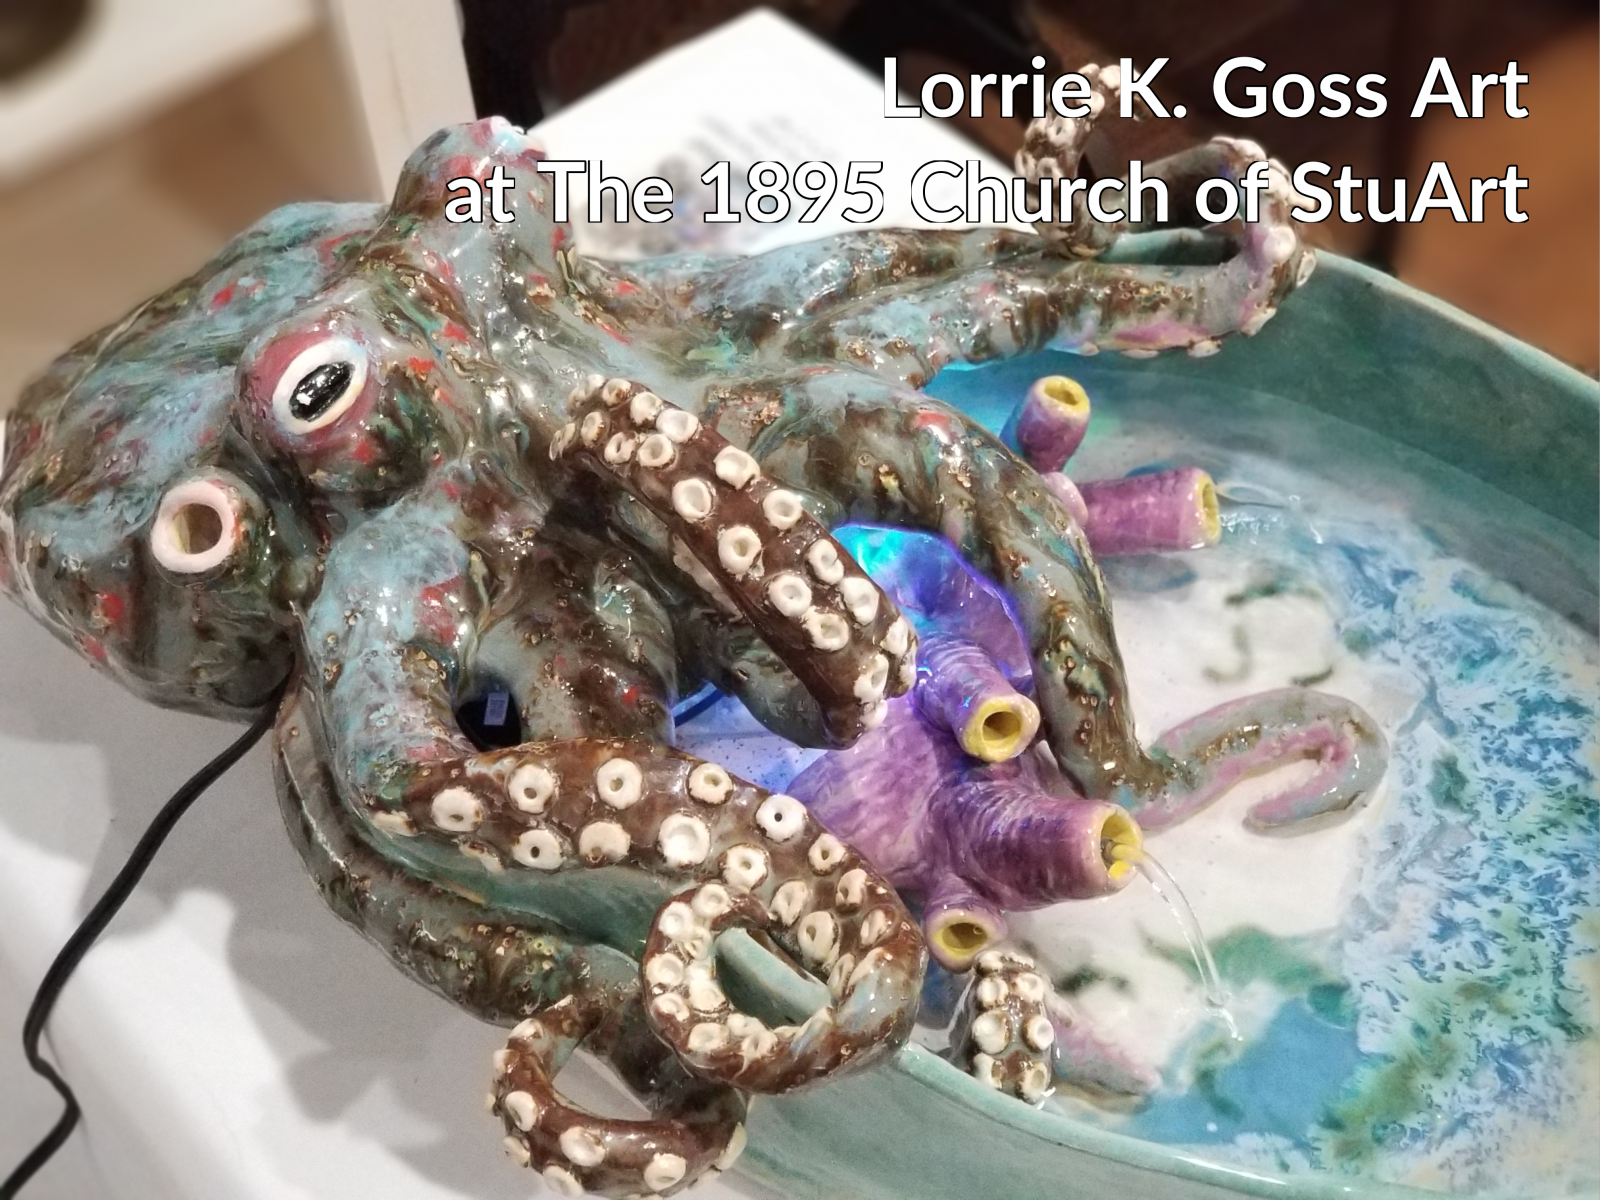 Lorrie K. Goss Ceramic Art